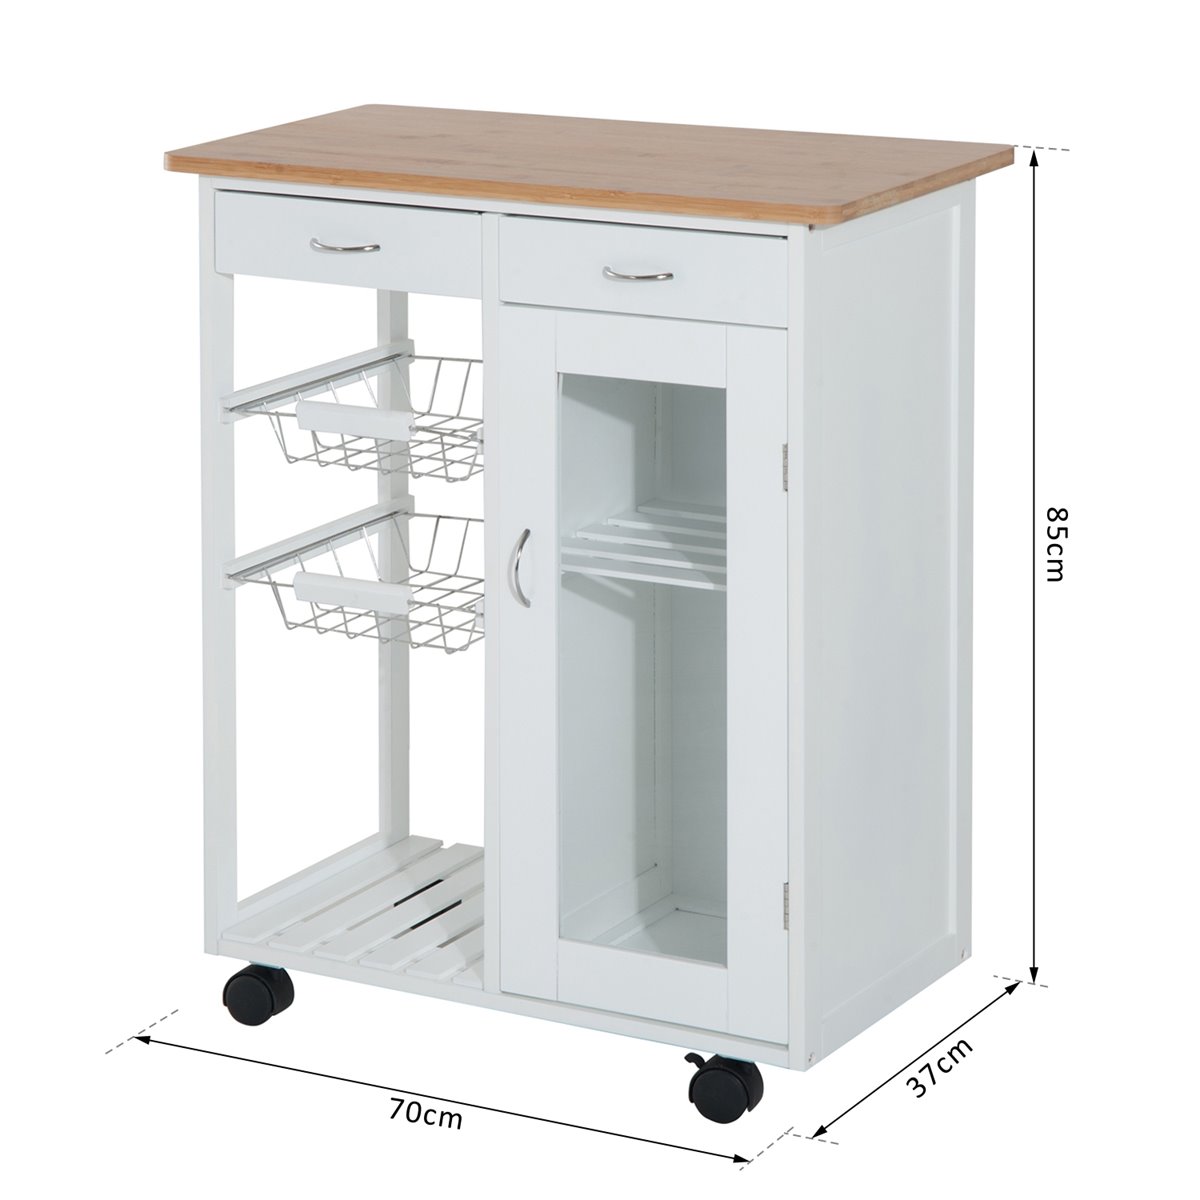 Carrito auxiliar de cocina Homcom 1 cajón+1 armario+3 estantes  blanco/natural 86,5x66x39,5 cm